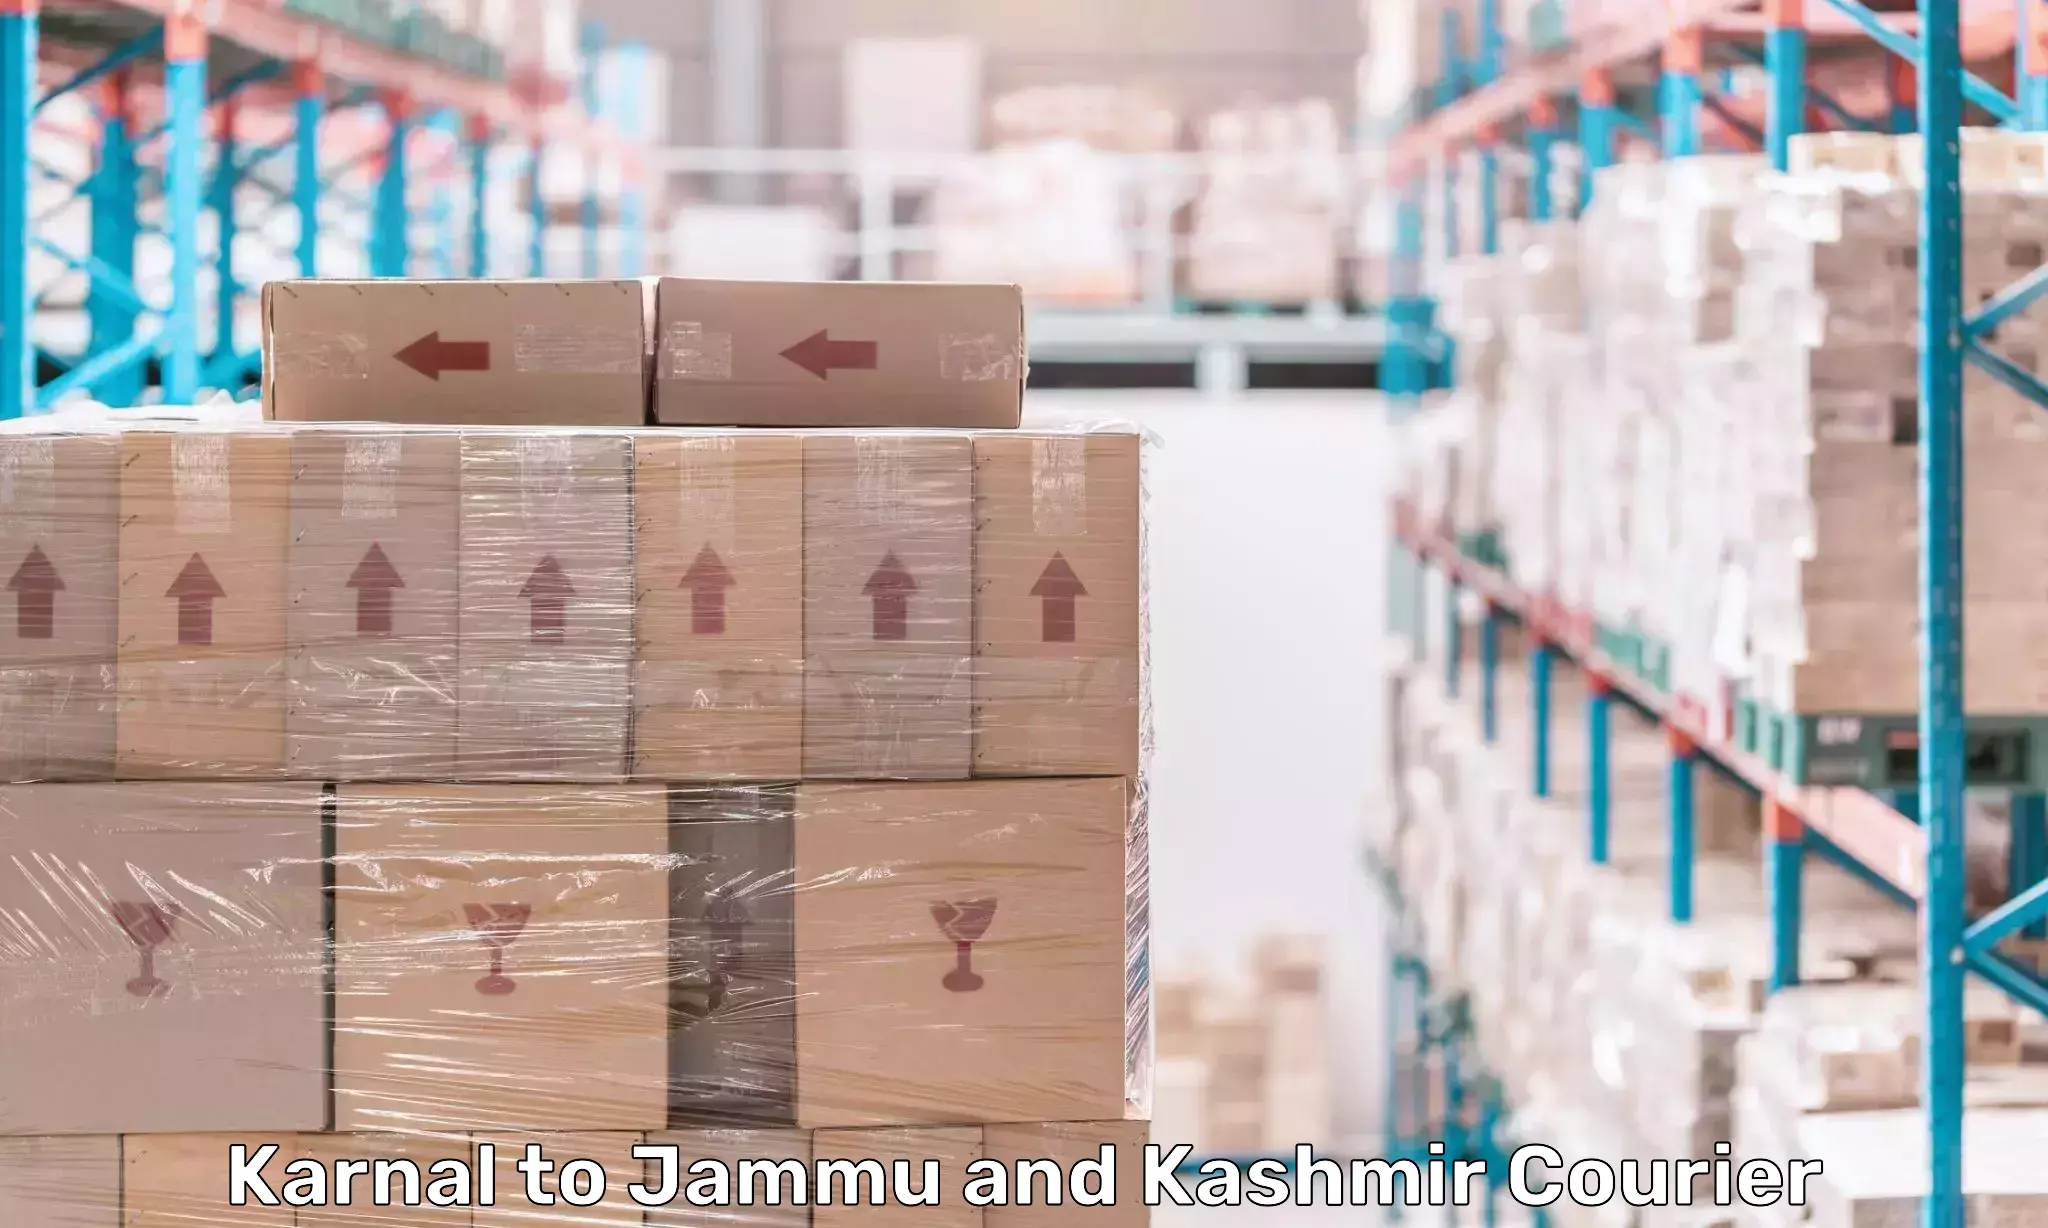 Courier service innovation Karnal to University of Jammu